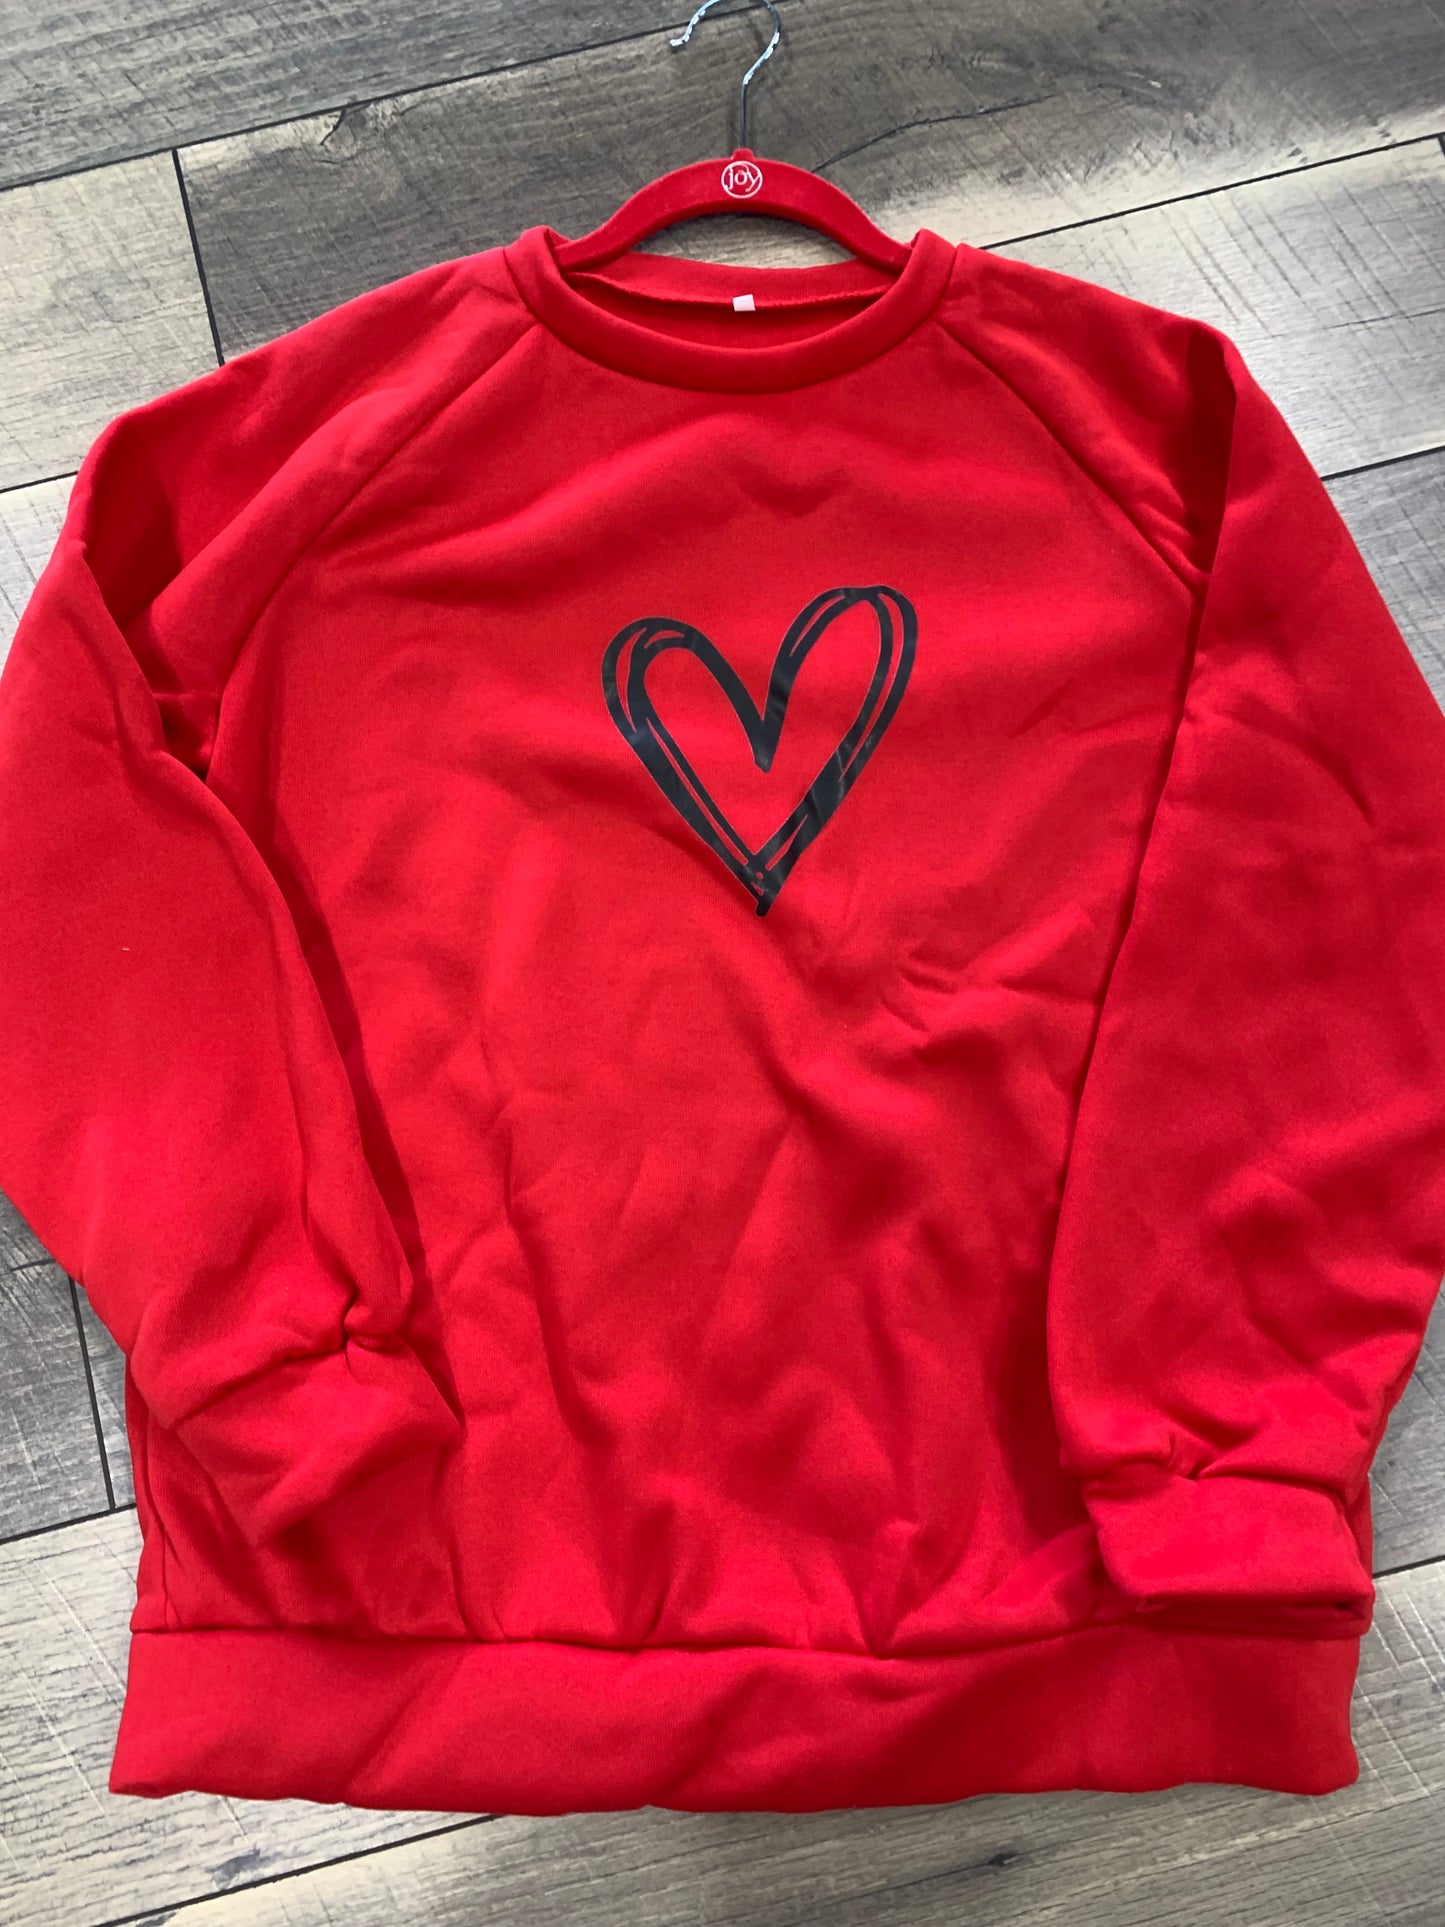 Red Women's Sweatshirt with heart